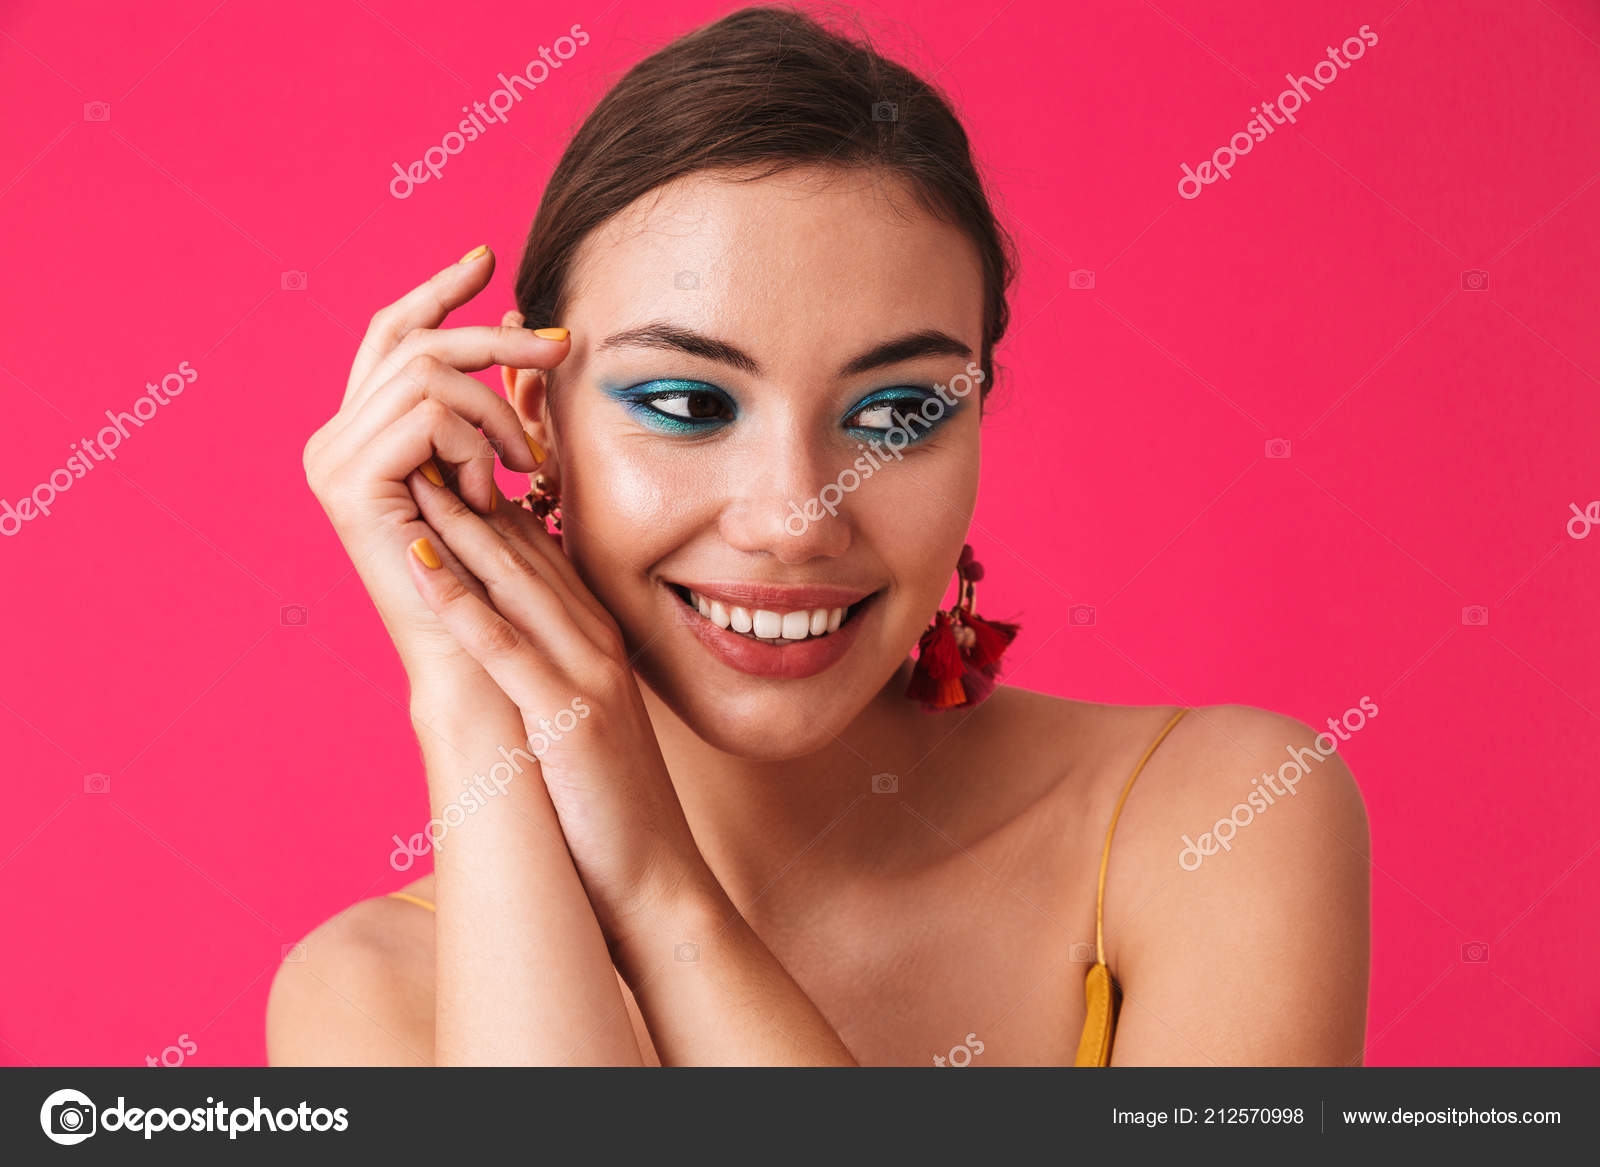 Фотографии девушек с накрашенными губами и серьгами (12)